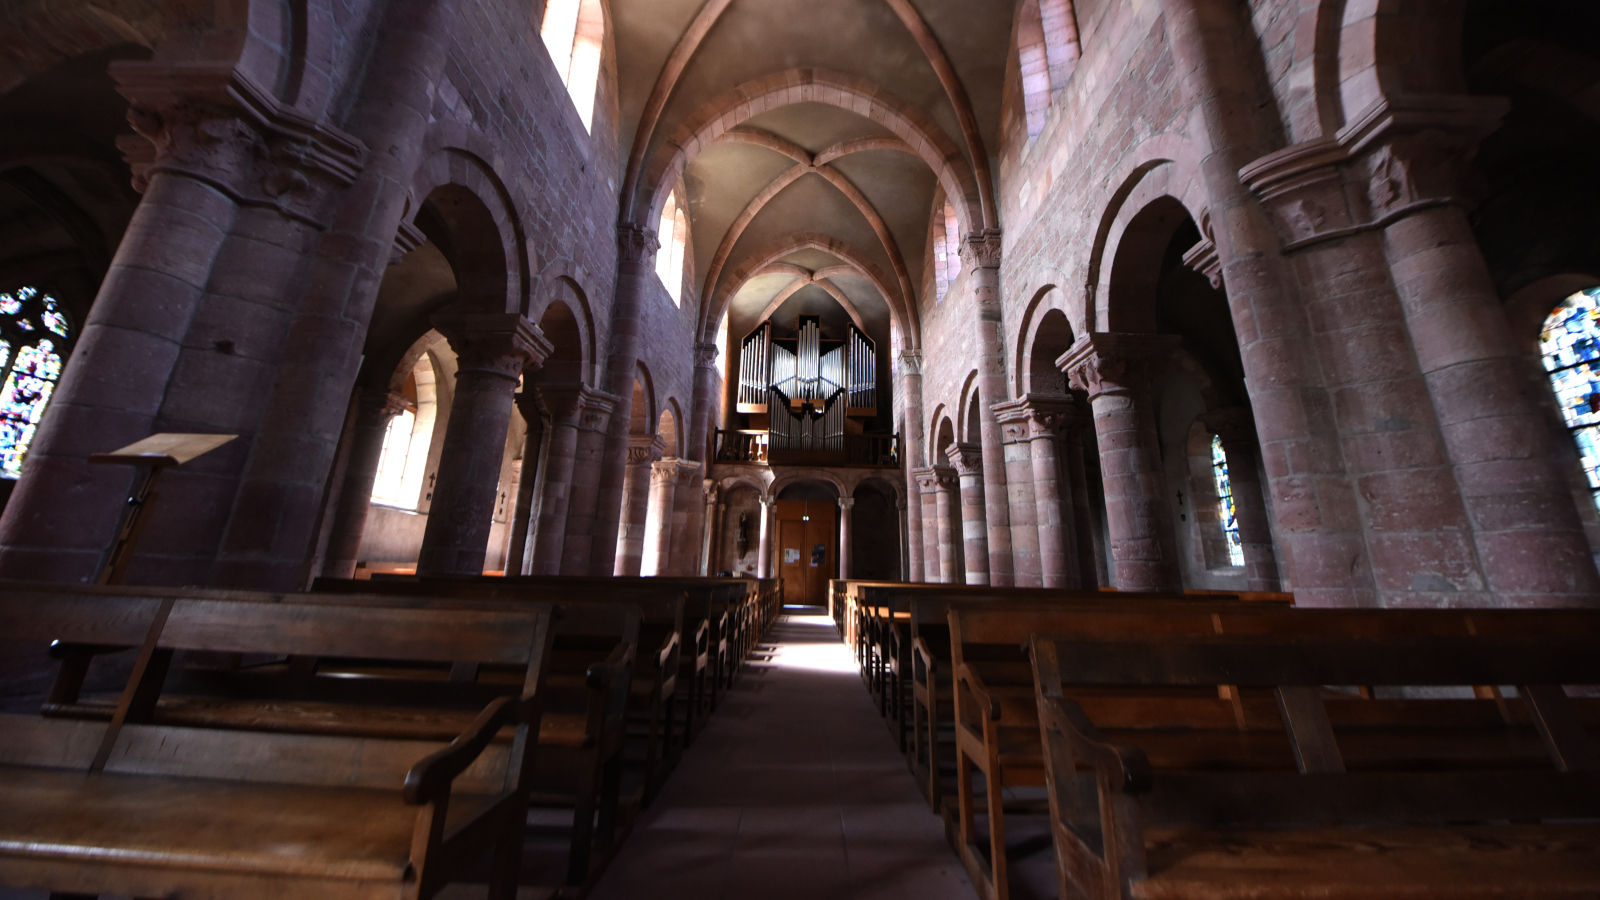 Une magnifique église abbatiale romane, riche des évolutions de l'architecture au travers des siècles.